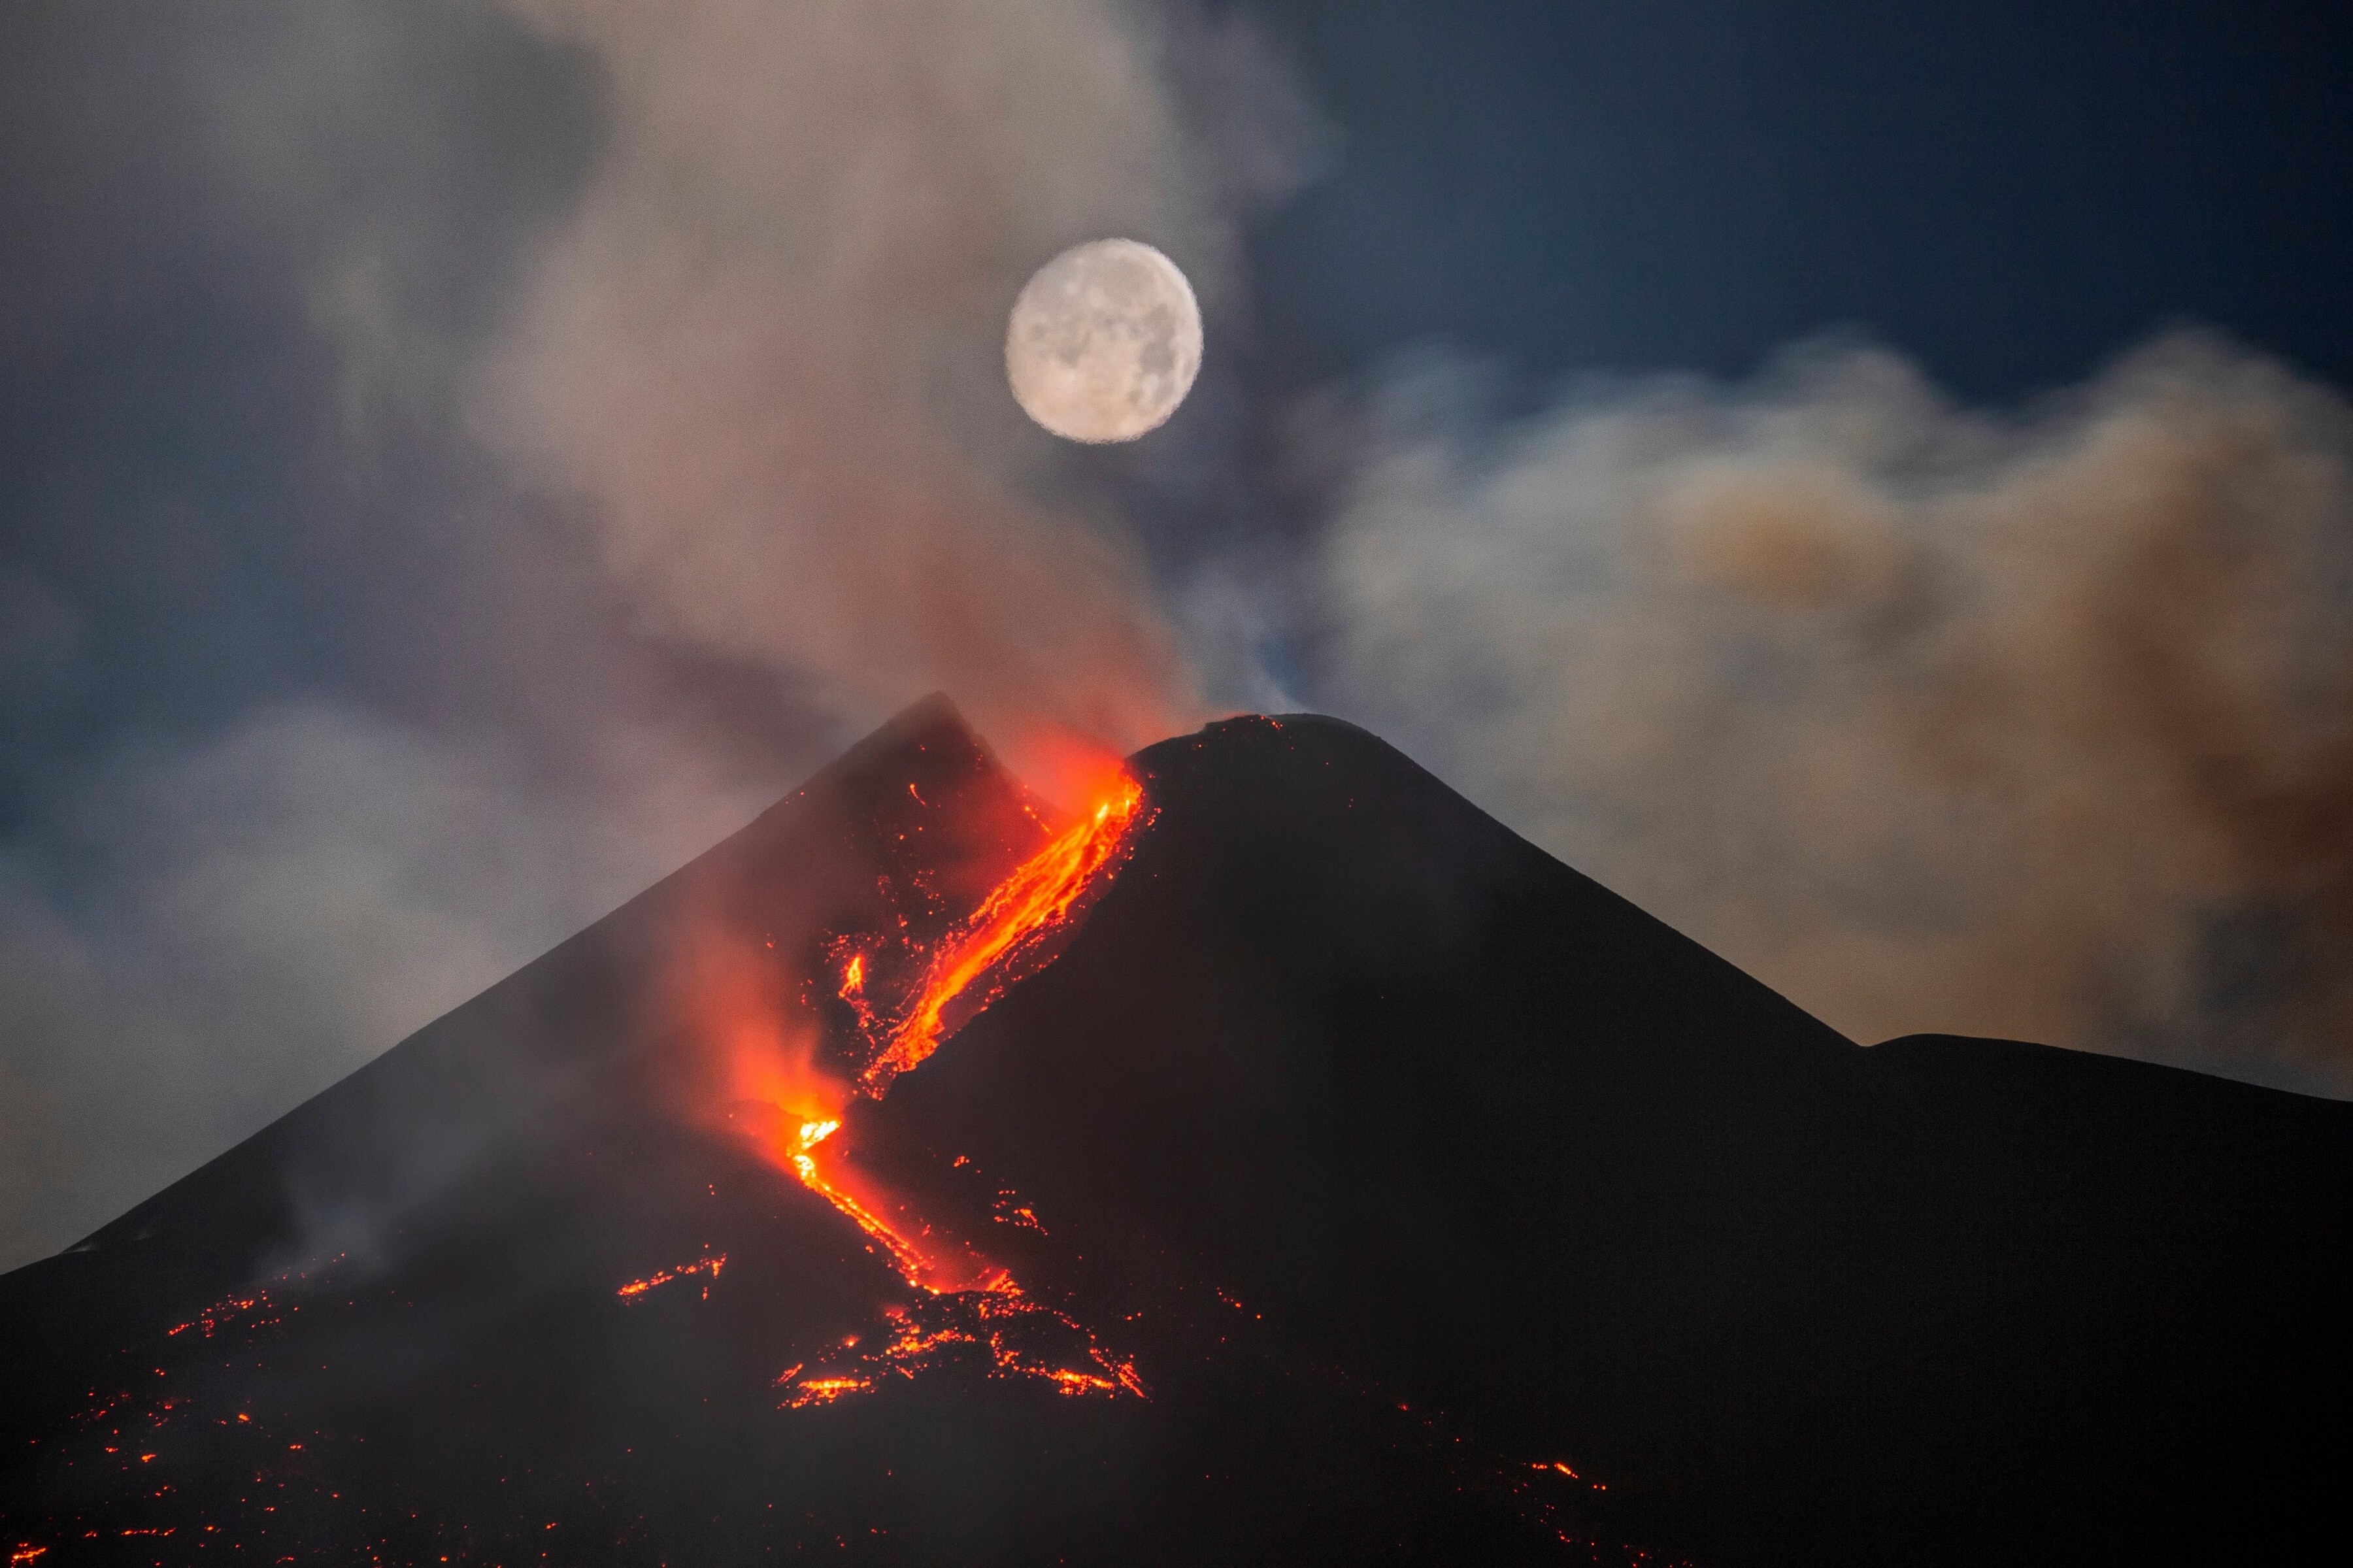 2 место в категории «Небесные пейзажи», 2021. Луна над кратером вулкана Этна, Сицилия, Италия. Автор Дарио Джаннобиле